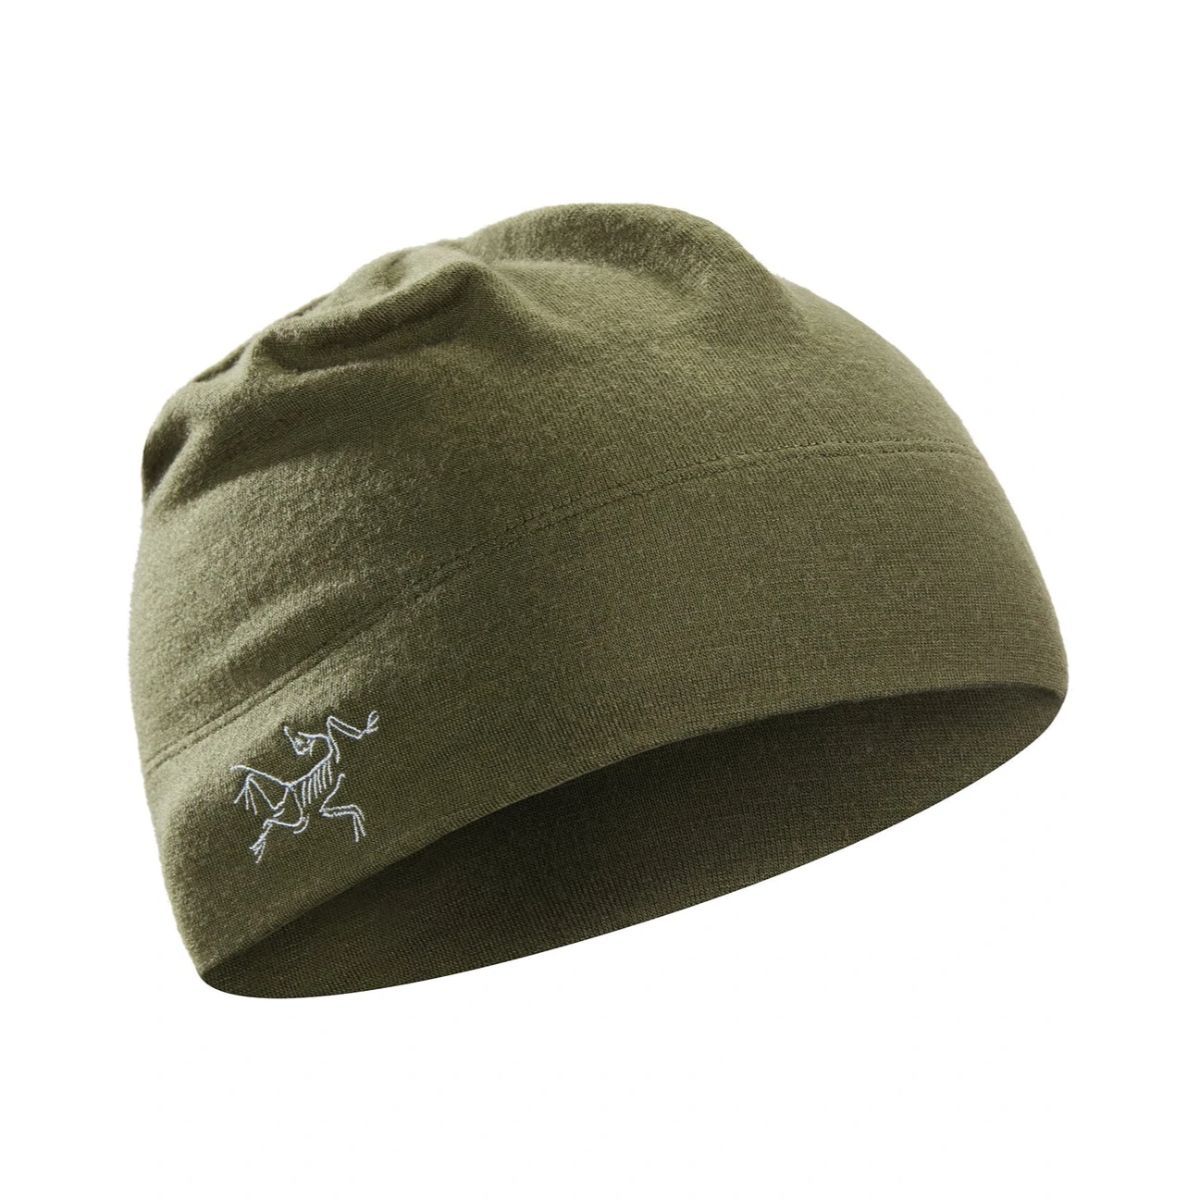 アークテリクス ロー LTW ビーニー (13456) ／ 帽子 ニット帽 登山 トレラン メリノウール インナーキャップ ロゴ ストレッチ